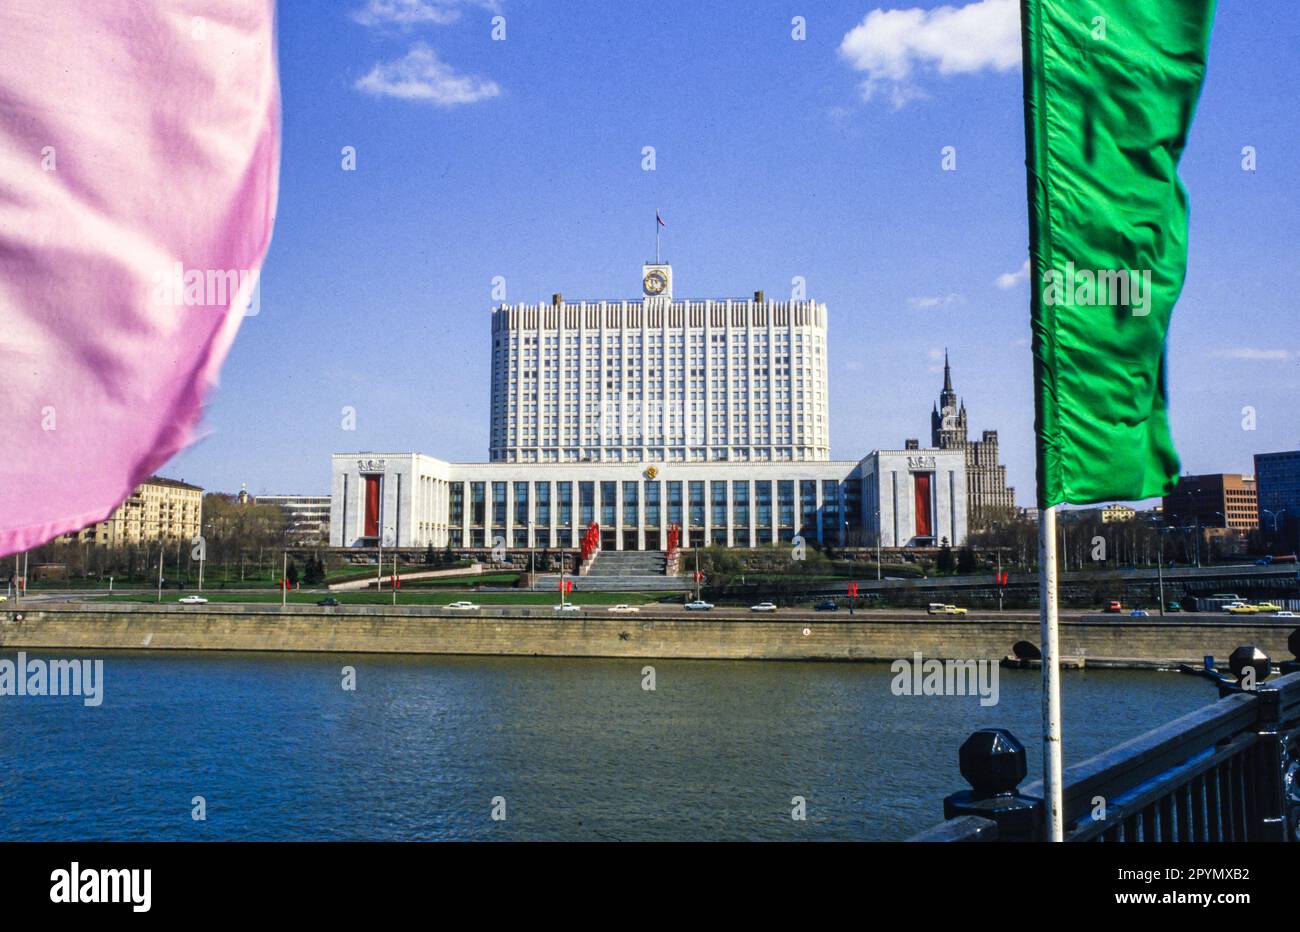 1988: La Casa de los Soviets de Rusia, justo antes del Primero de Mayo de 1988. El edificio se hizo más conocido como la Casa Blanca Rusa después del golpe de agosto de 1991 y fue gravemente dañado por el incendio de tanques en 1993 durante la crisis constitucional rusa, pero desde entonces ha sido restaurado. El edificio barroco de estilo 'pastel de bodas' en el fondo es el edificio de la Plaza Kudrinskaya, una de las llamadas 'Siete Hermanas' encargado por Joseph Stalin como parte de un plan para modernizar Moscú inmediatamente después de la Segunda Guerra Mundial Otra de las Siete Hermanas, el Hotel Ukraina, está frente a la Casa Blanca al otro lado del río Moskva. Foto de stock